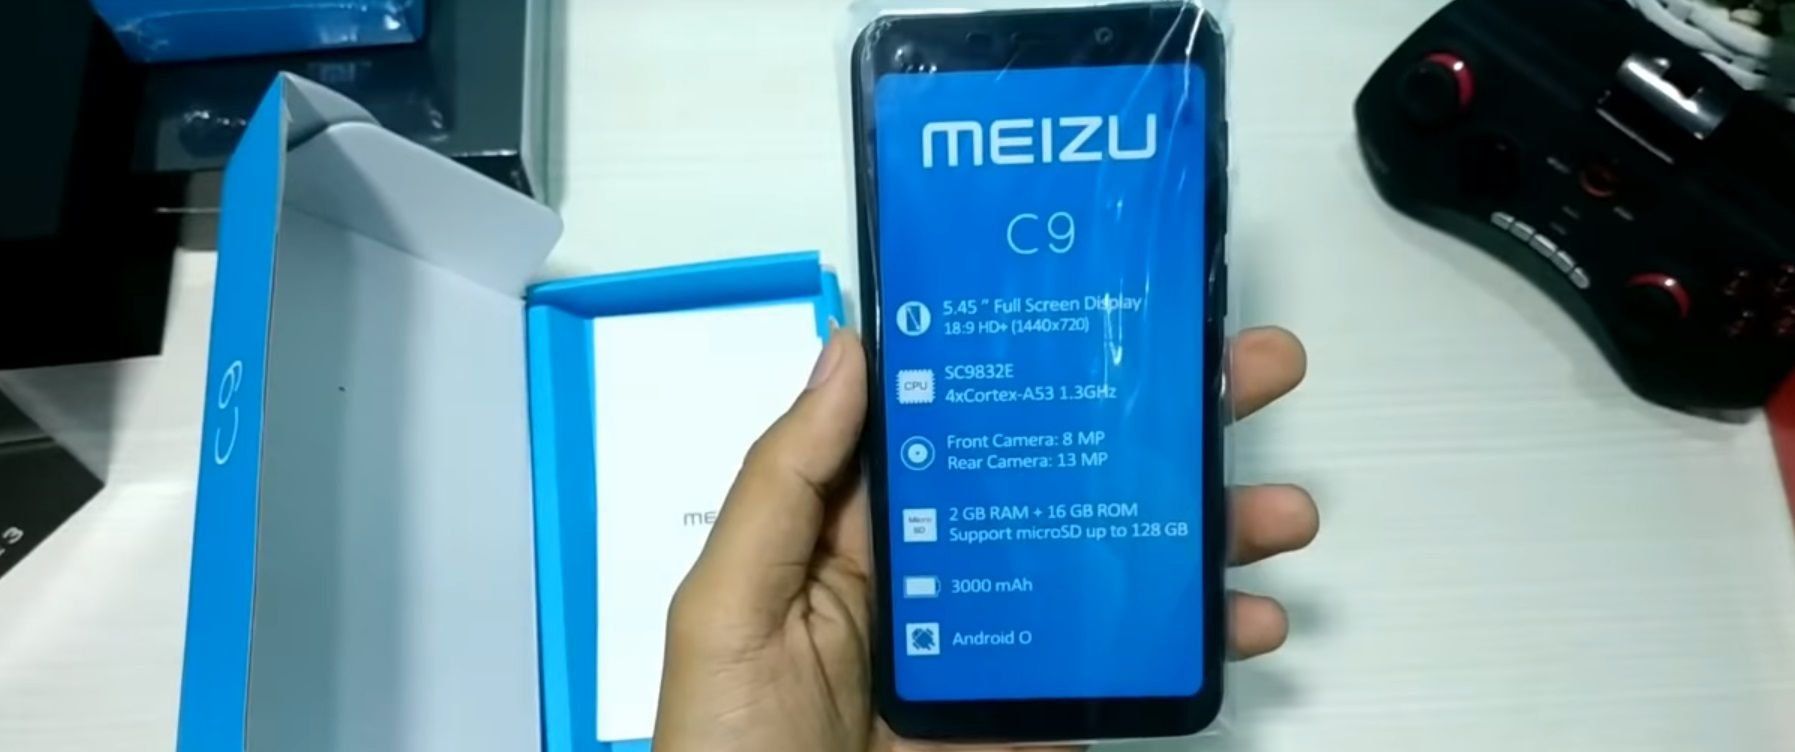 Meizu C9 och C9 Pro smartphones - fördelar och nackdelar